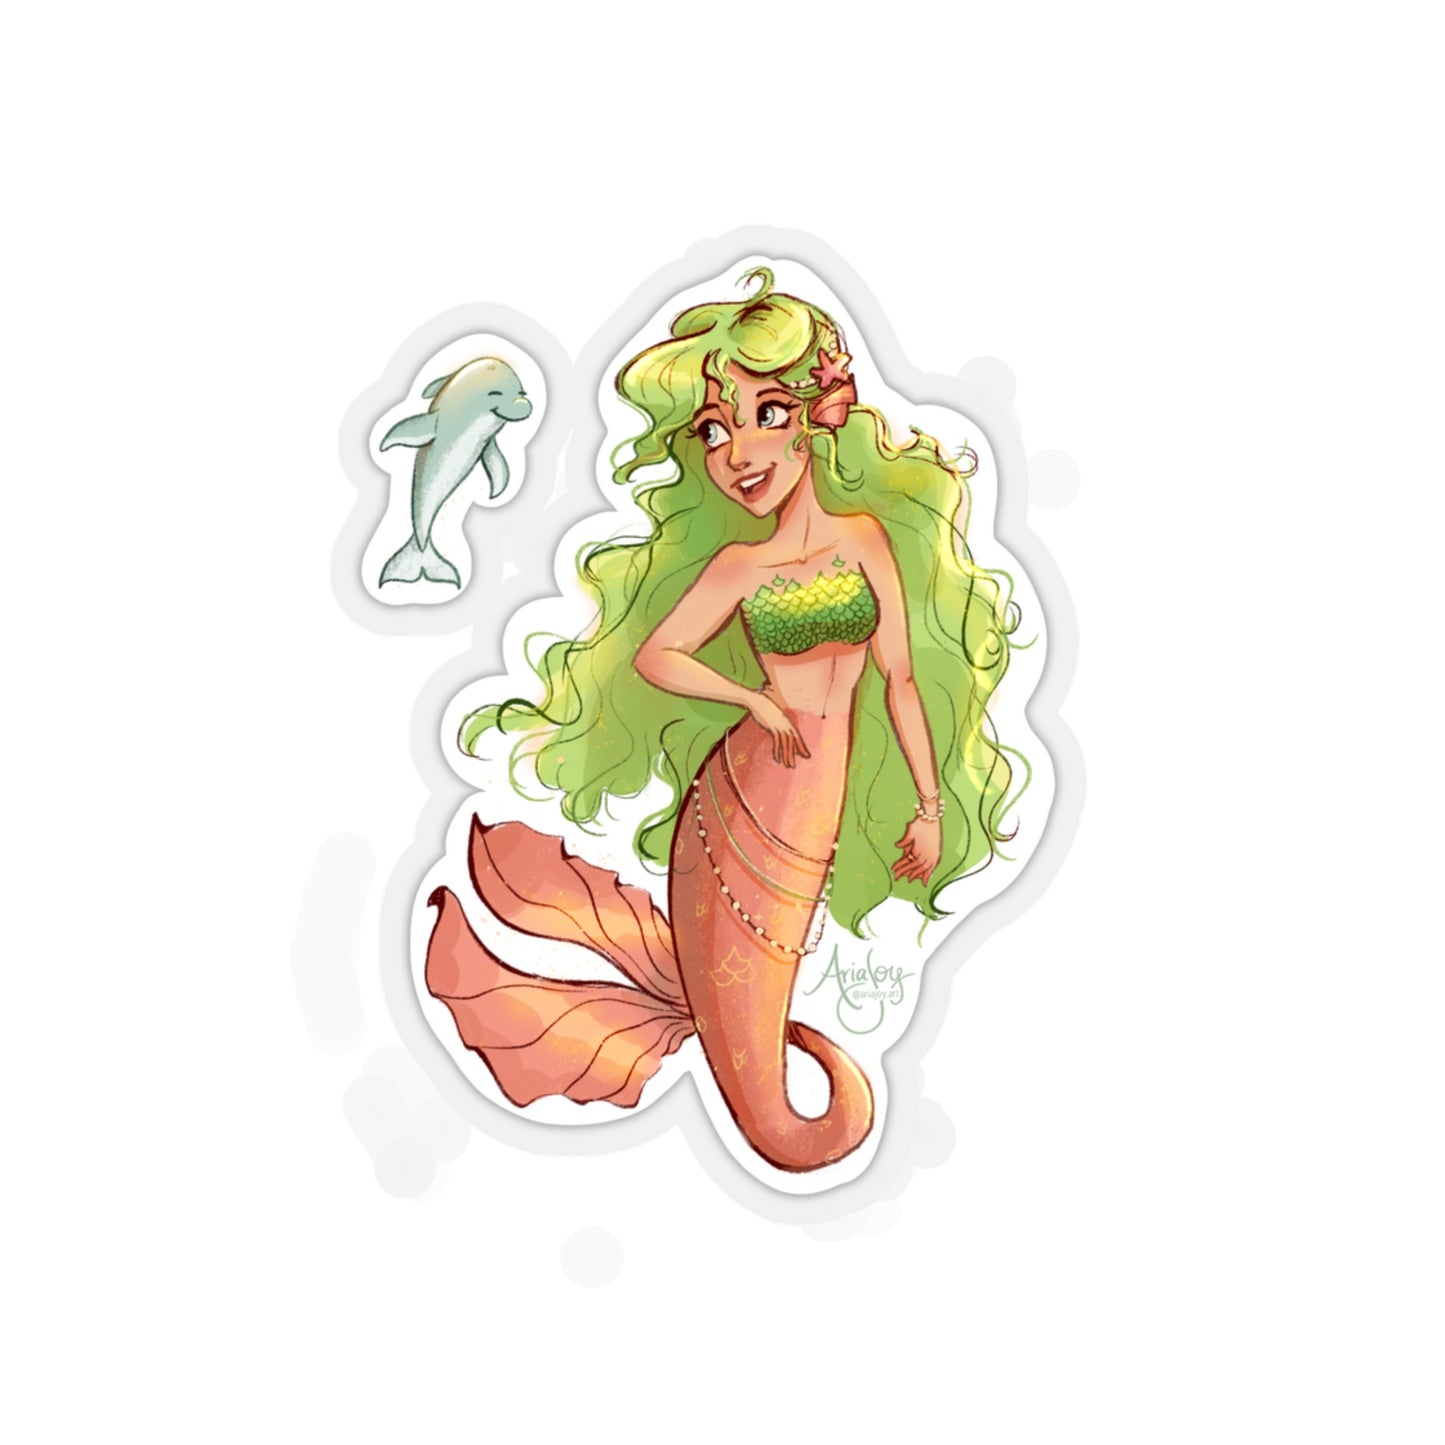 Jaida the Mermaid Sticker